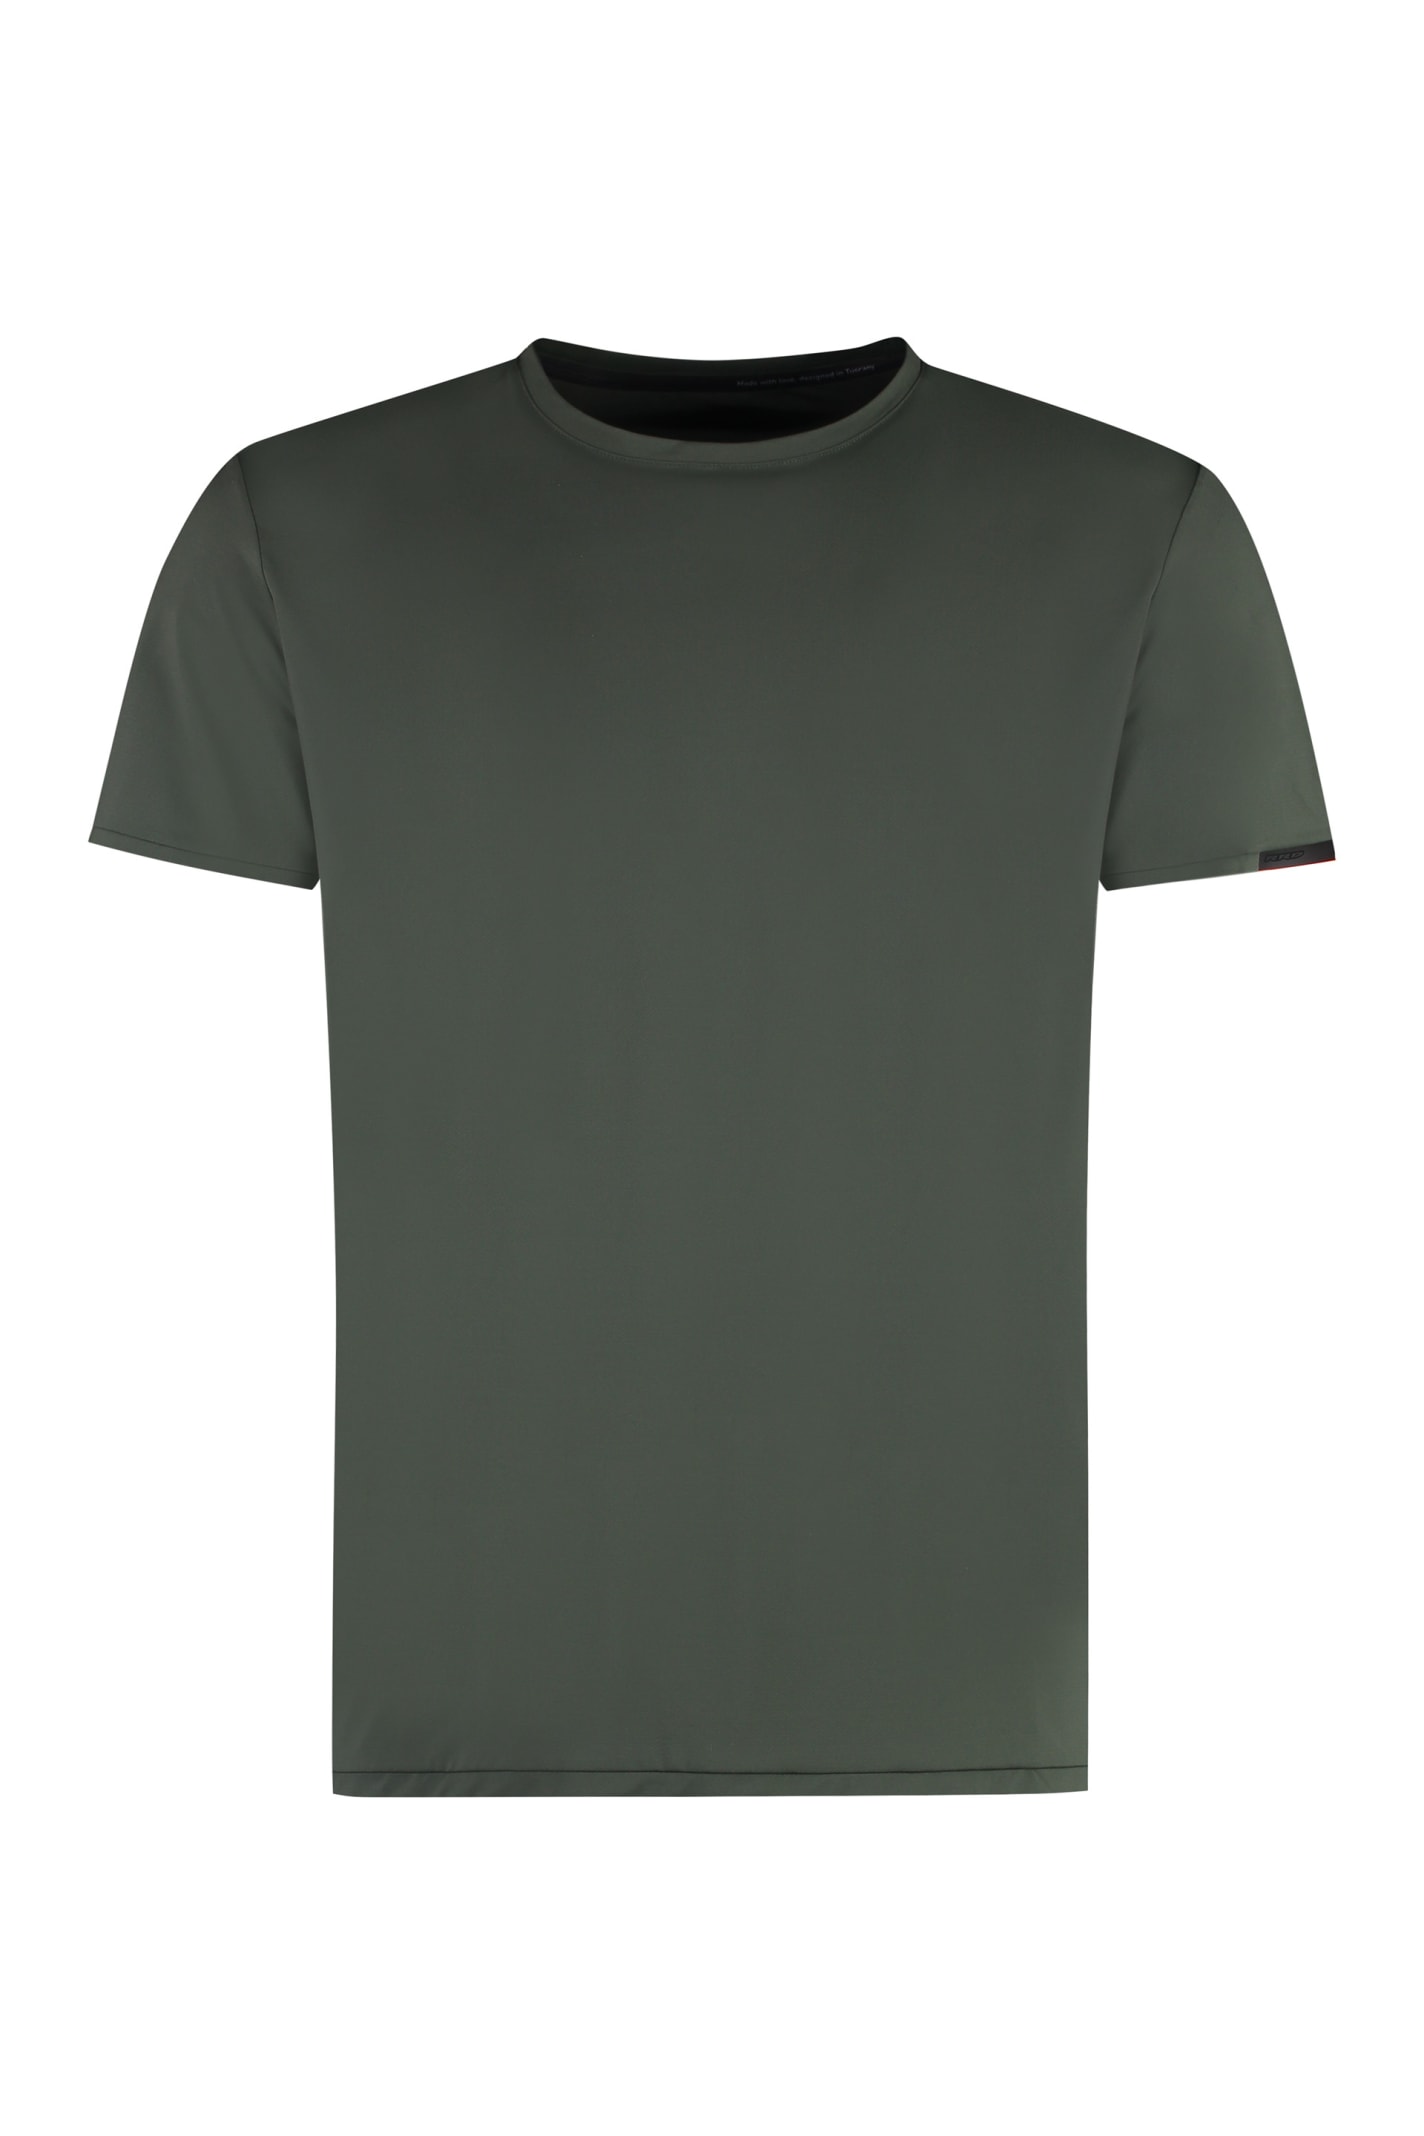 Rrd - Roberto Ricci Design Oxford Techno Fabric T-shirt In Green